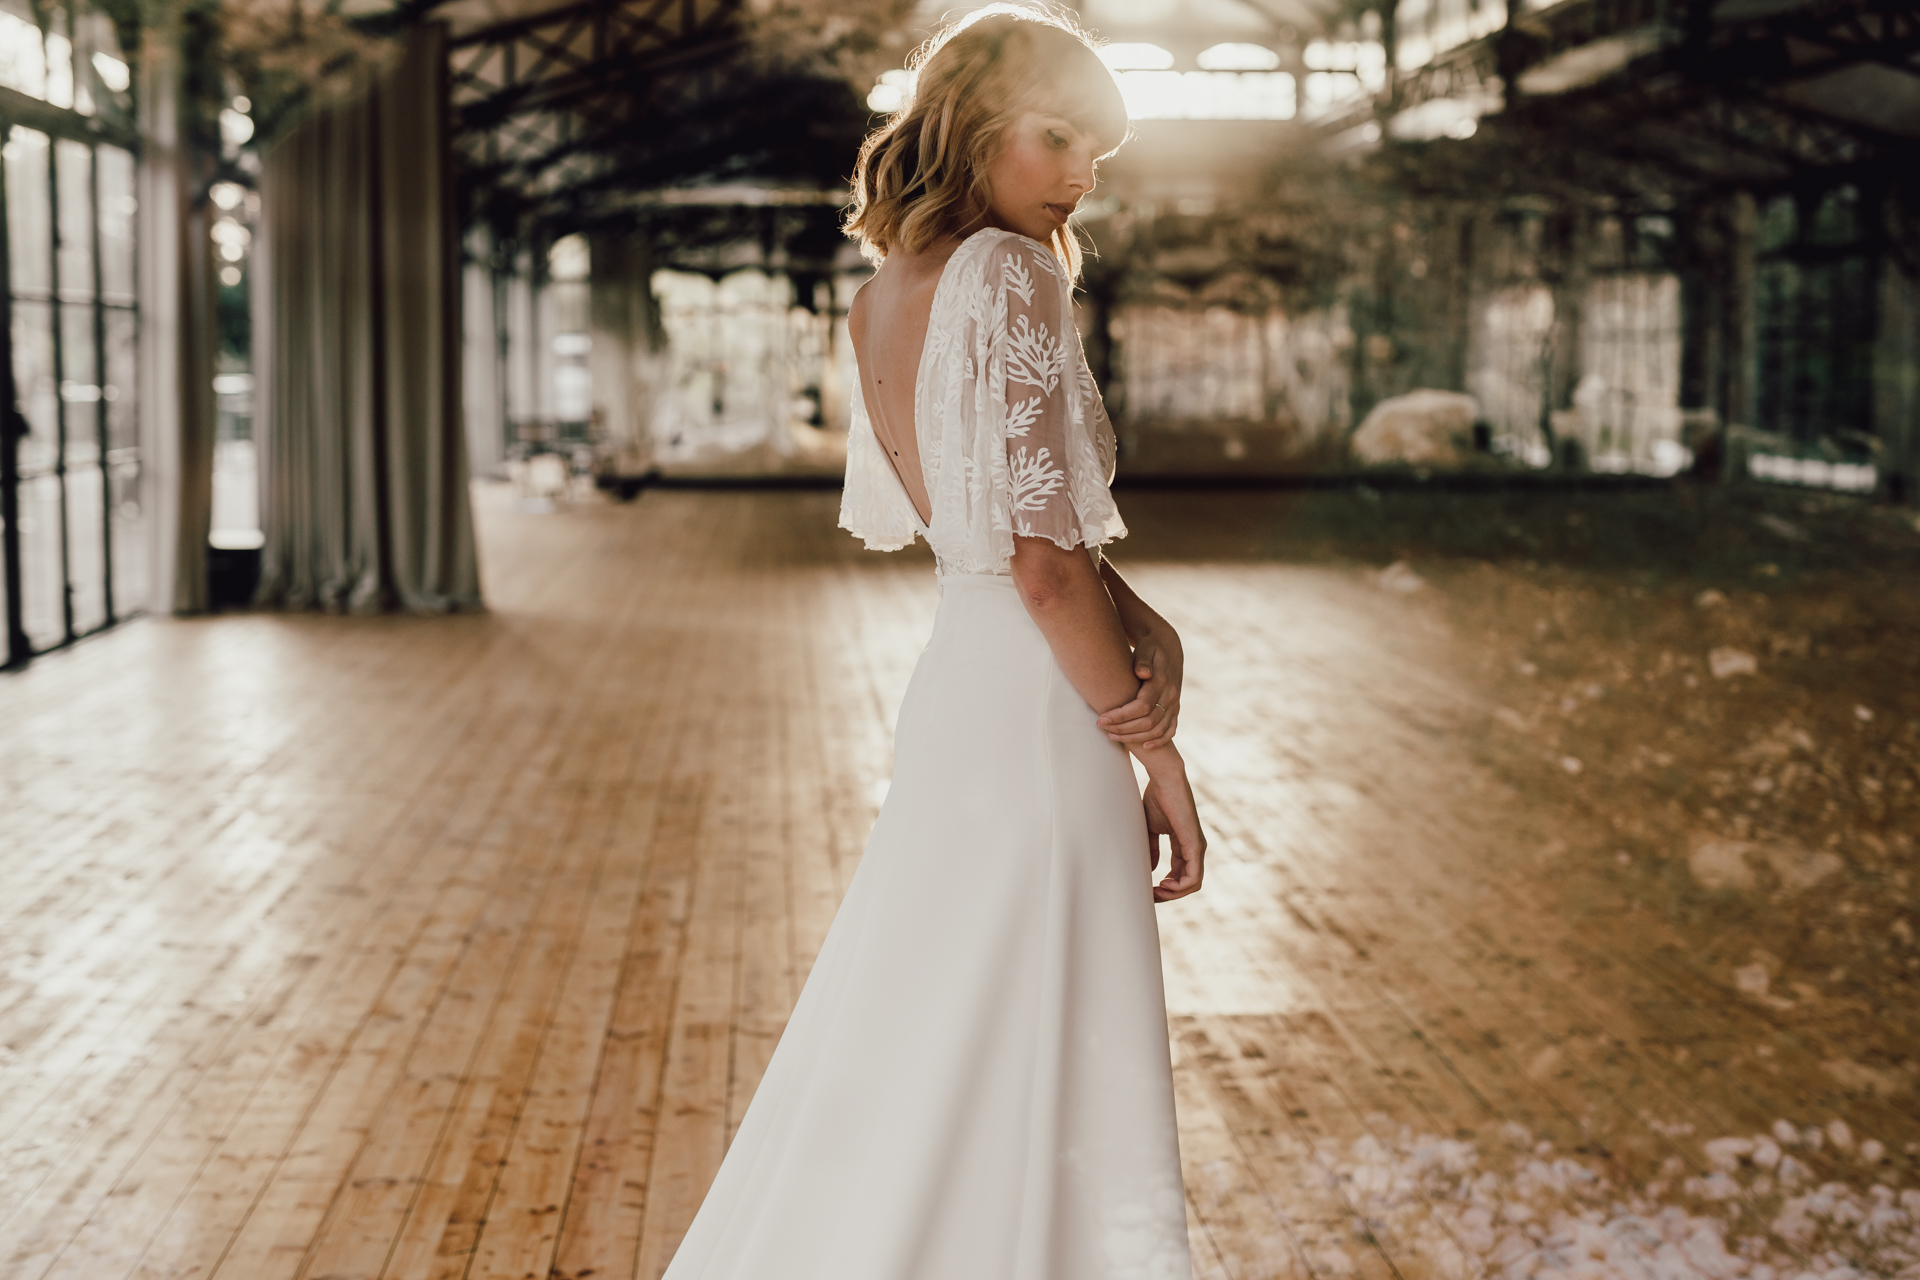 robe de mariée Collection 2020, grand espace vide avec une mariée dans un style bohème